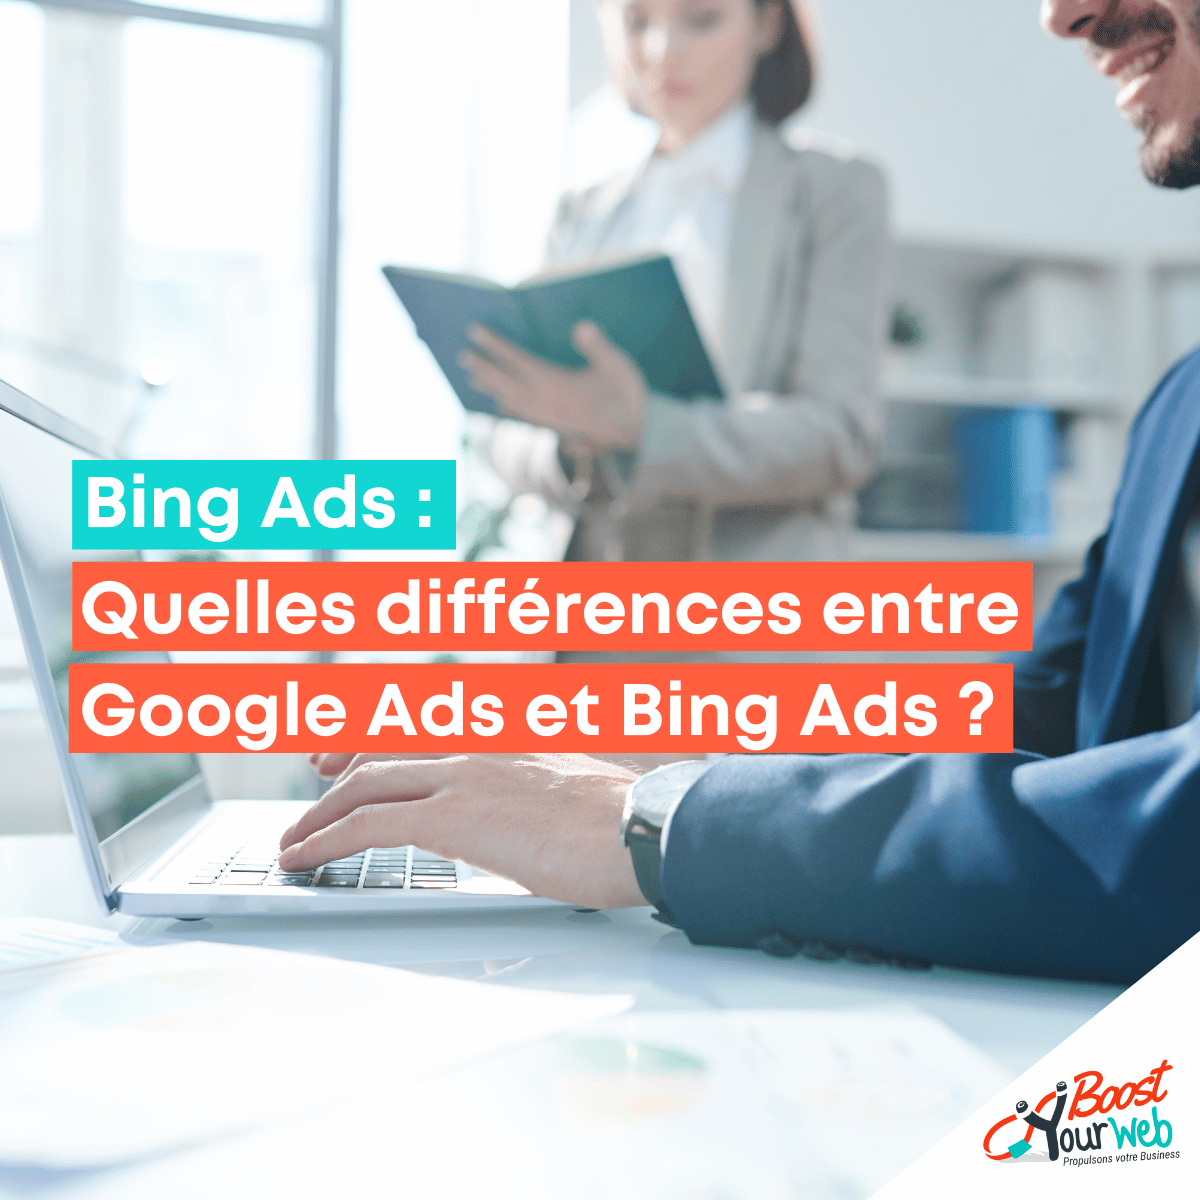 Quelles différences entre Google Ads et Bing Ads ?